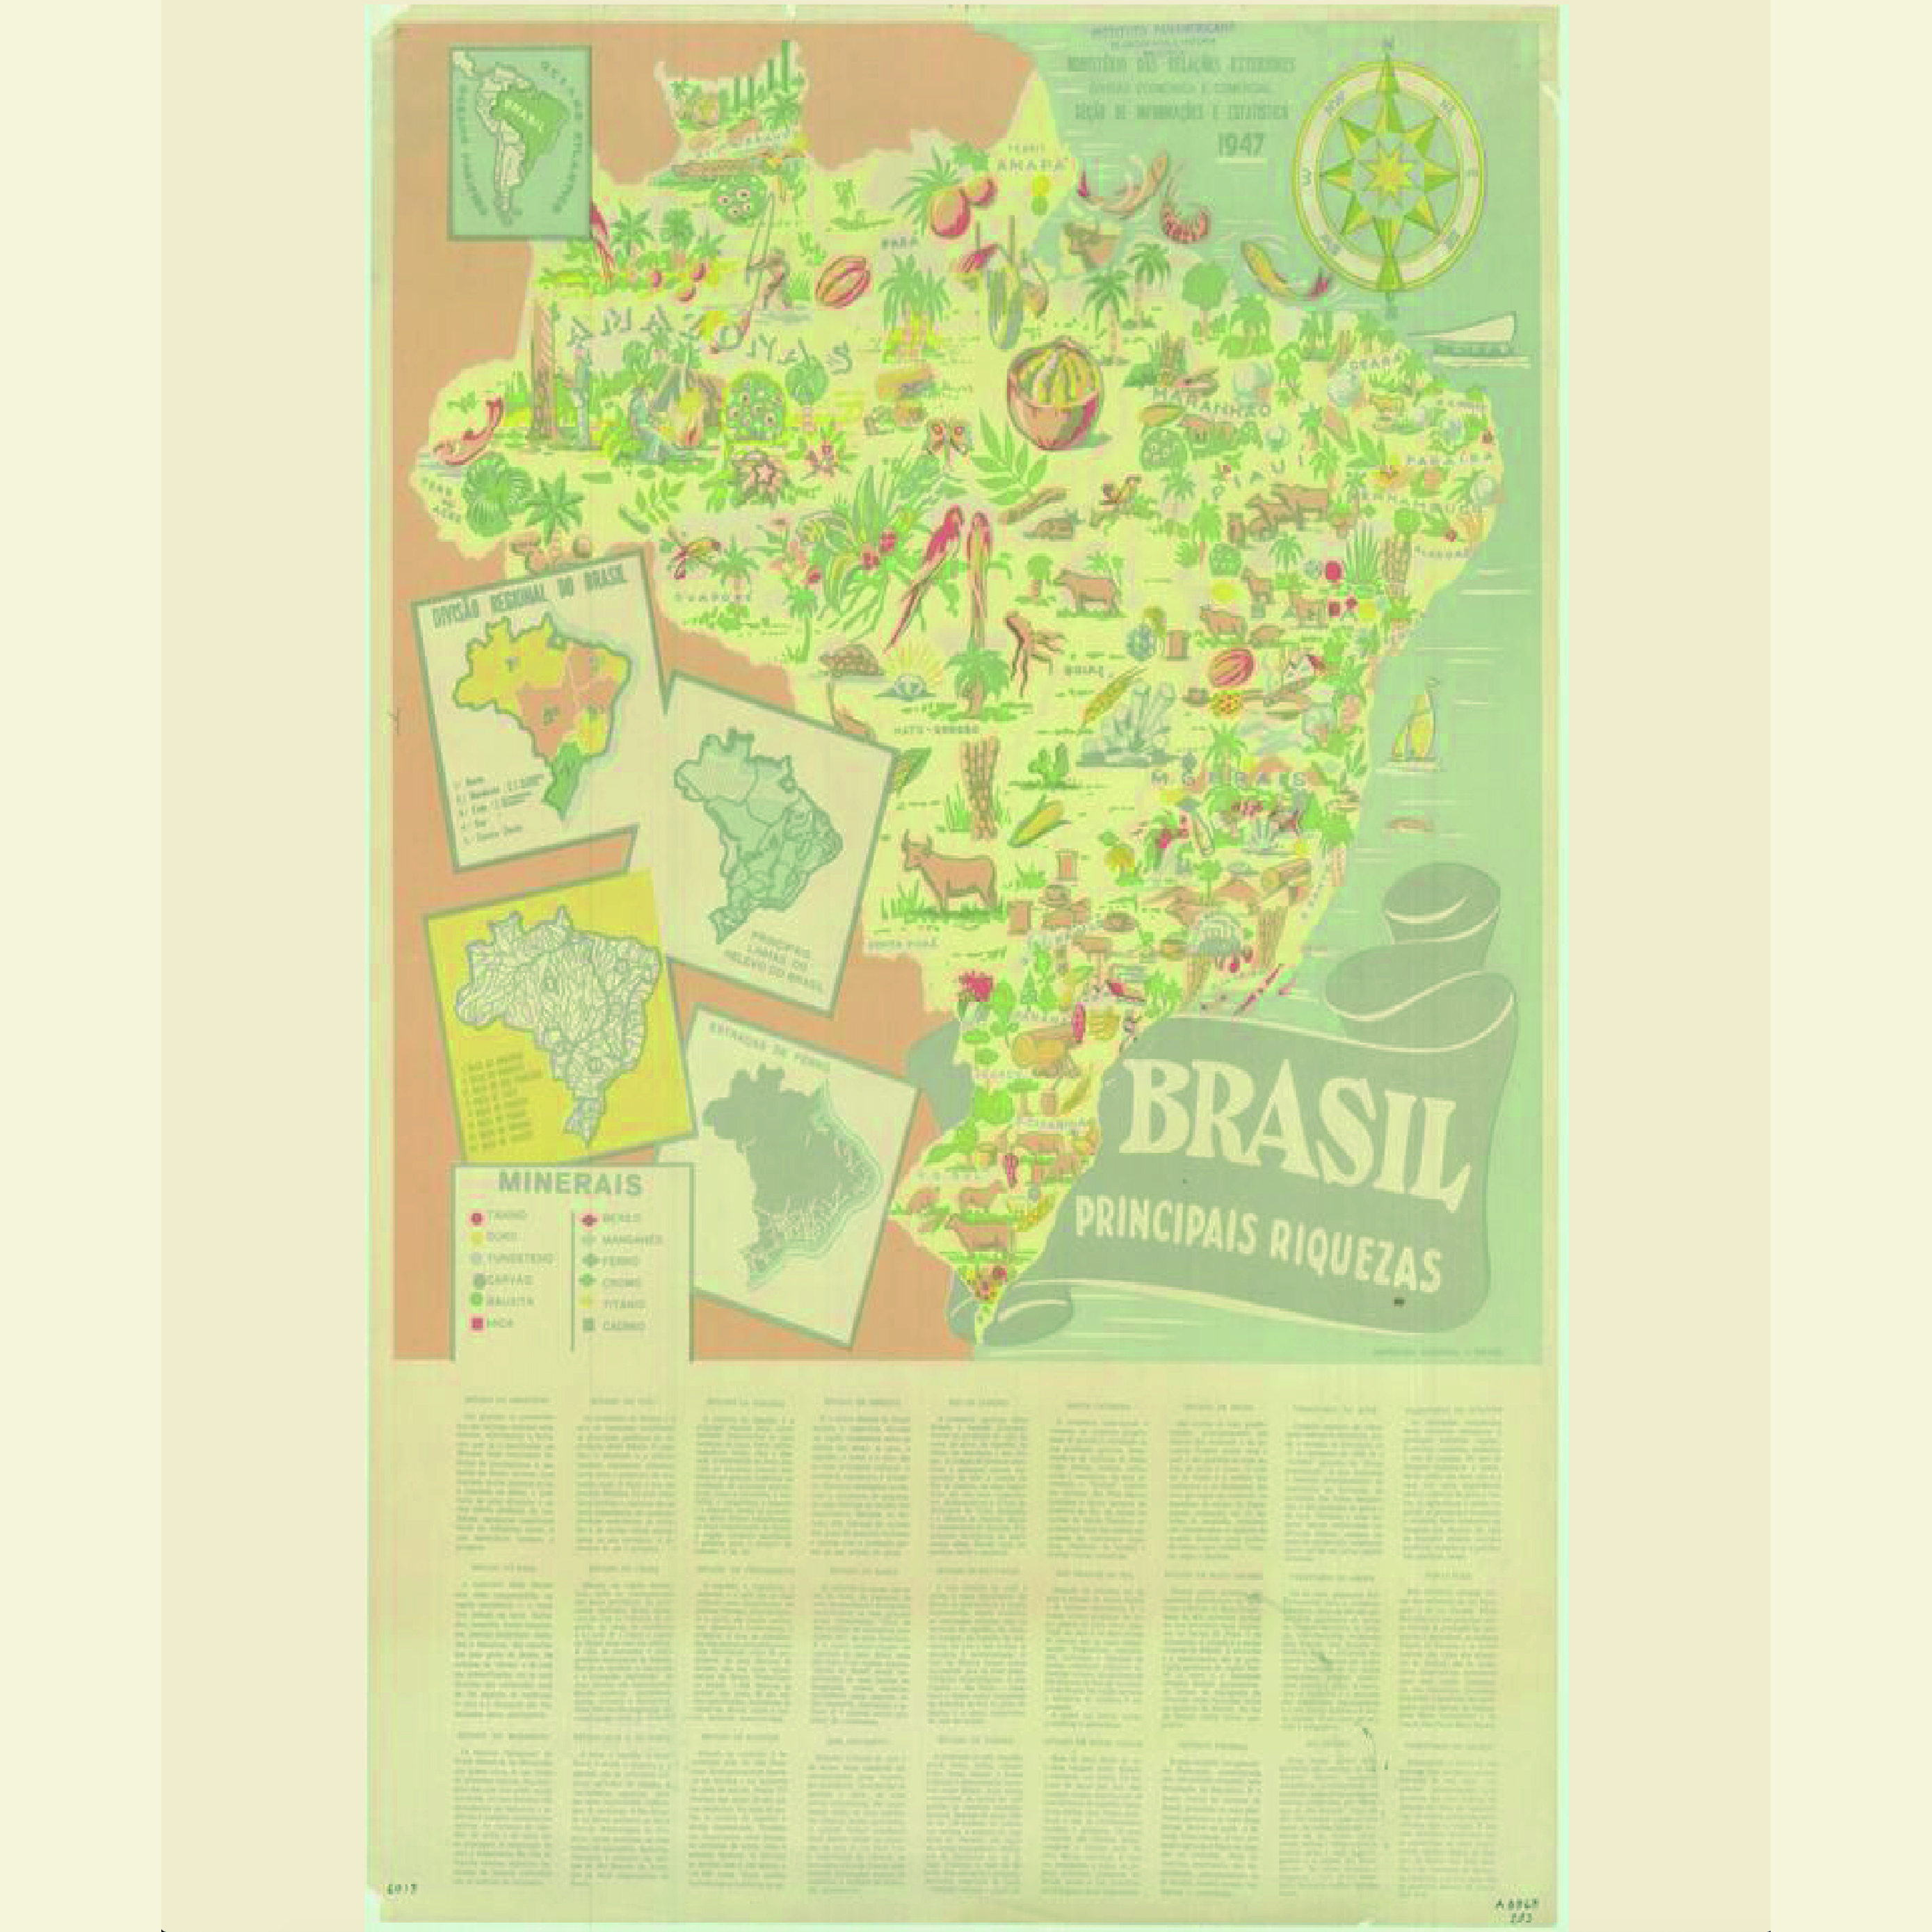 Para conmemorar un año más del Día Internacional de la Madre Tierra, la Mapoteca presenta mapa titulado “Mapa pictórico de Brasil”, elaborado por el Ministerio de Relaciones Exteriores, División Económica y Comercial, y publicado en 1947.